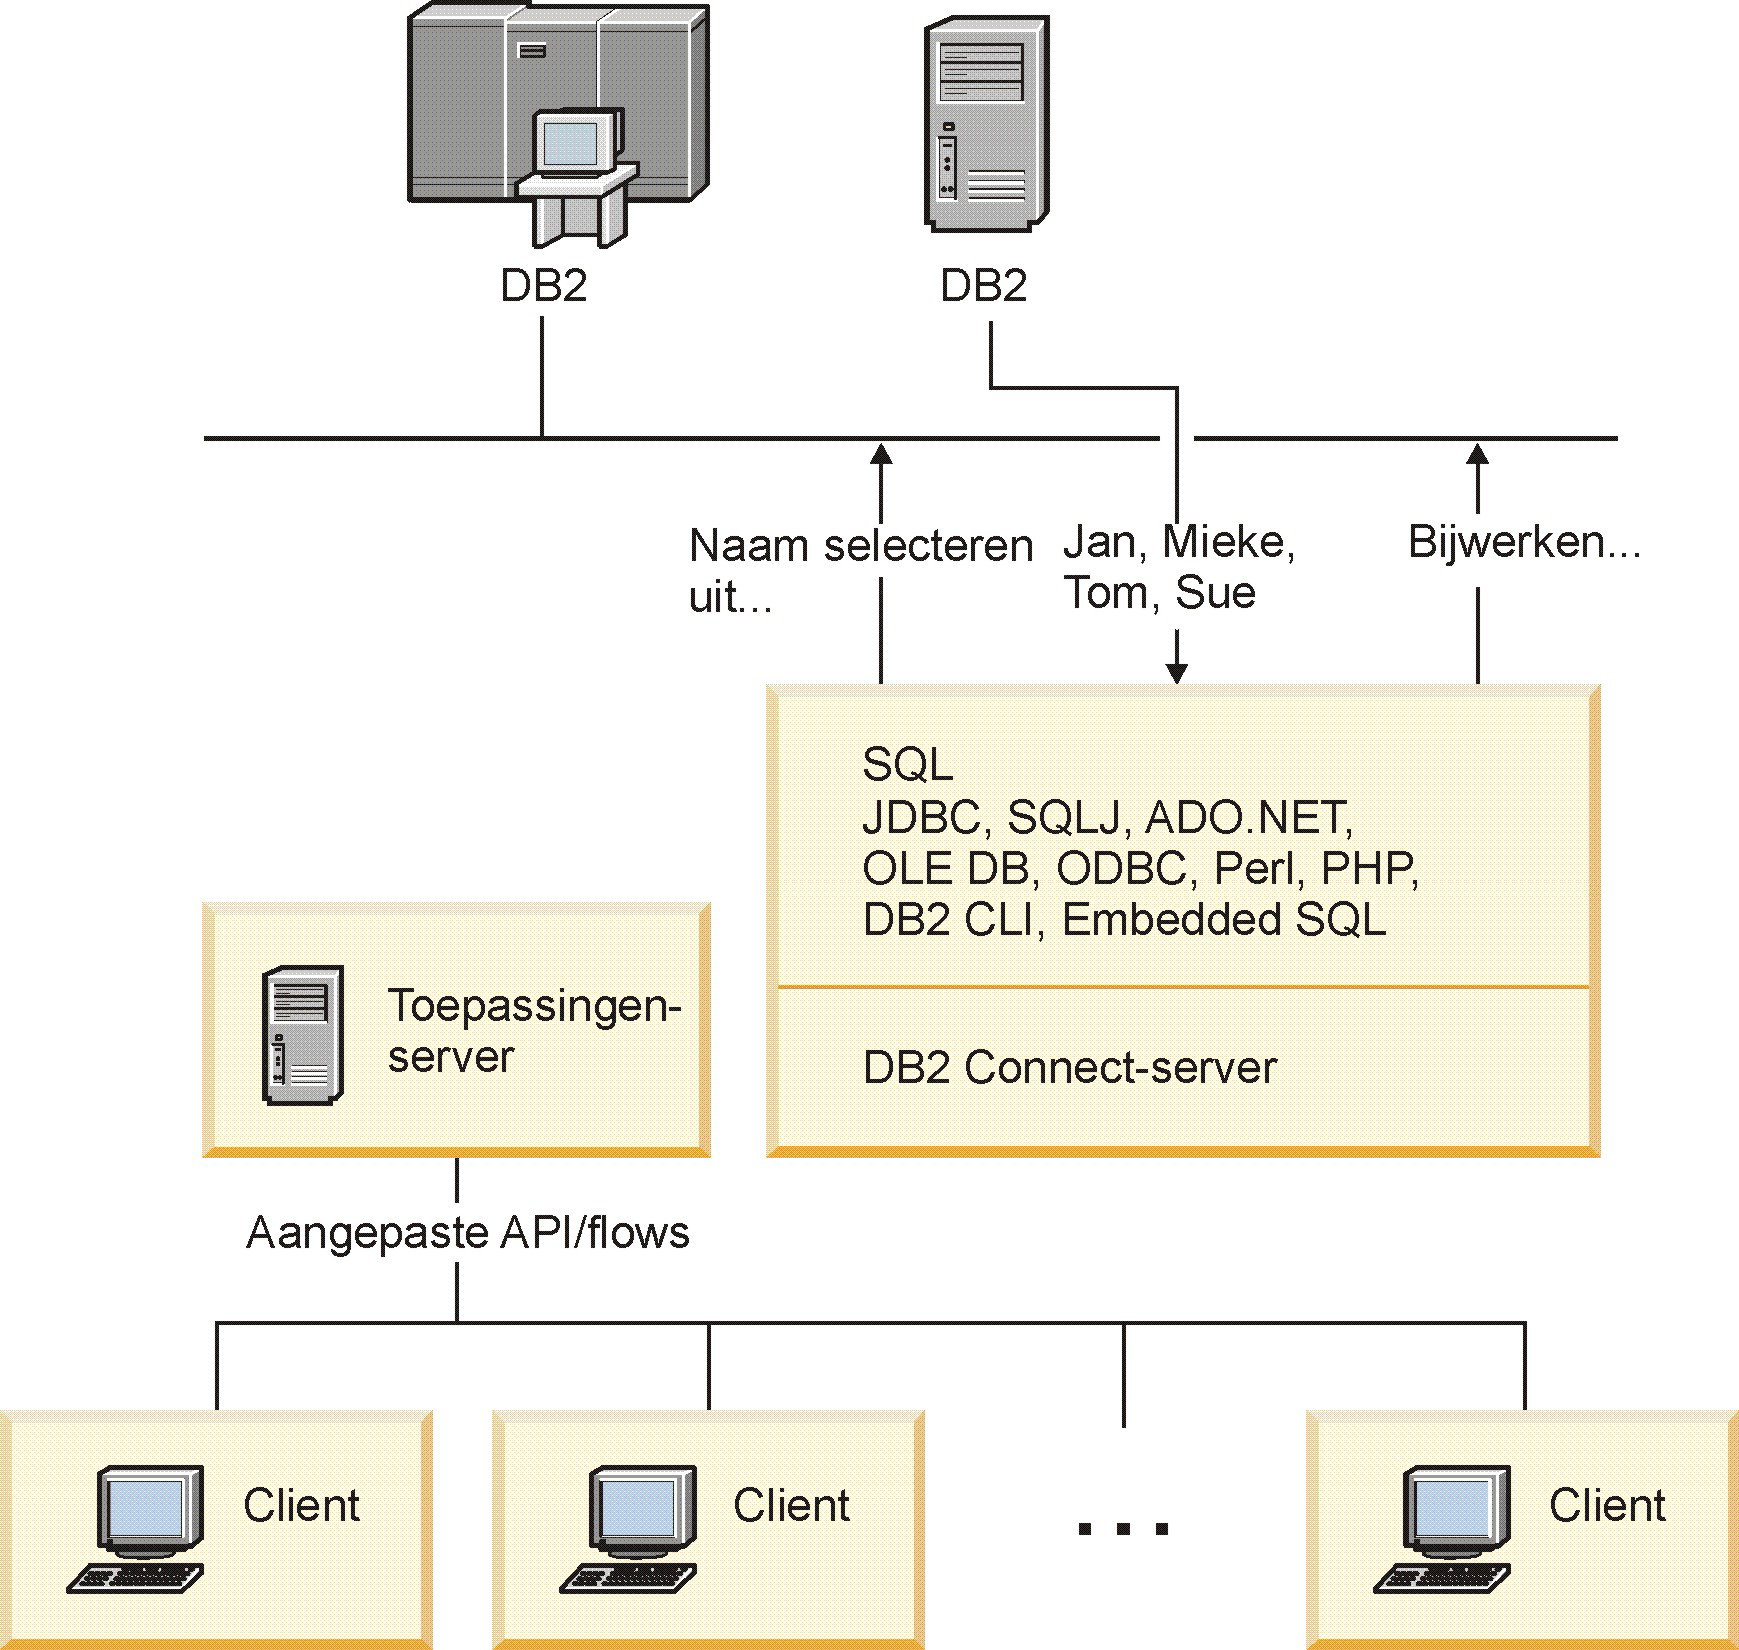 Perl, PHP en OLE DB) of een olledige communicatie-infrastructuur oor de interactie met DB2-databaseserers kan worden ontwikkeld.